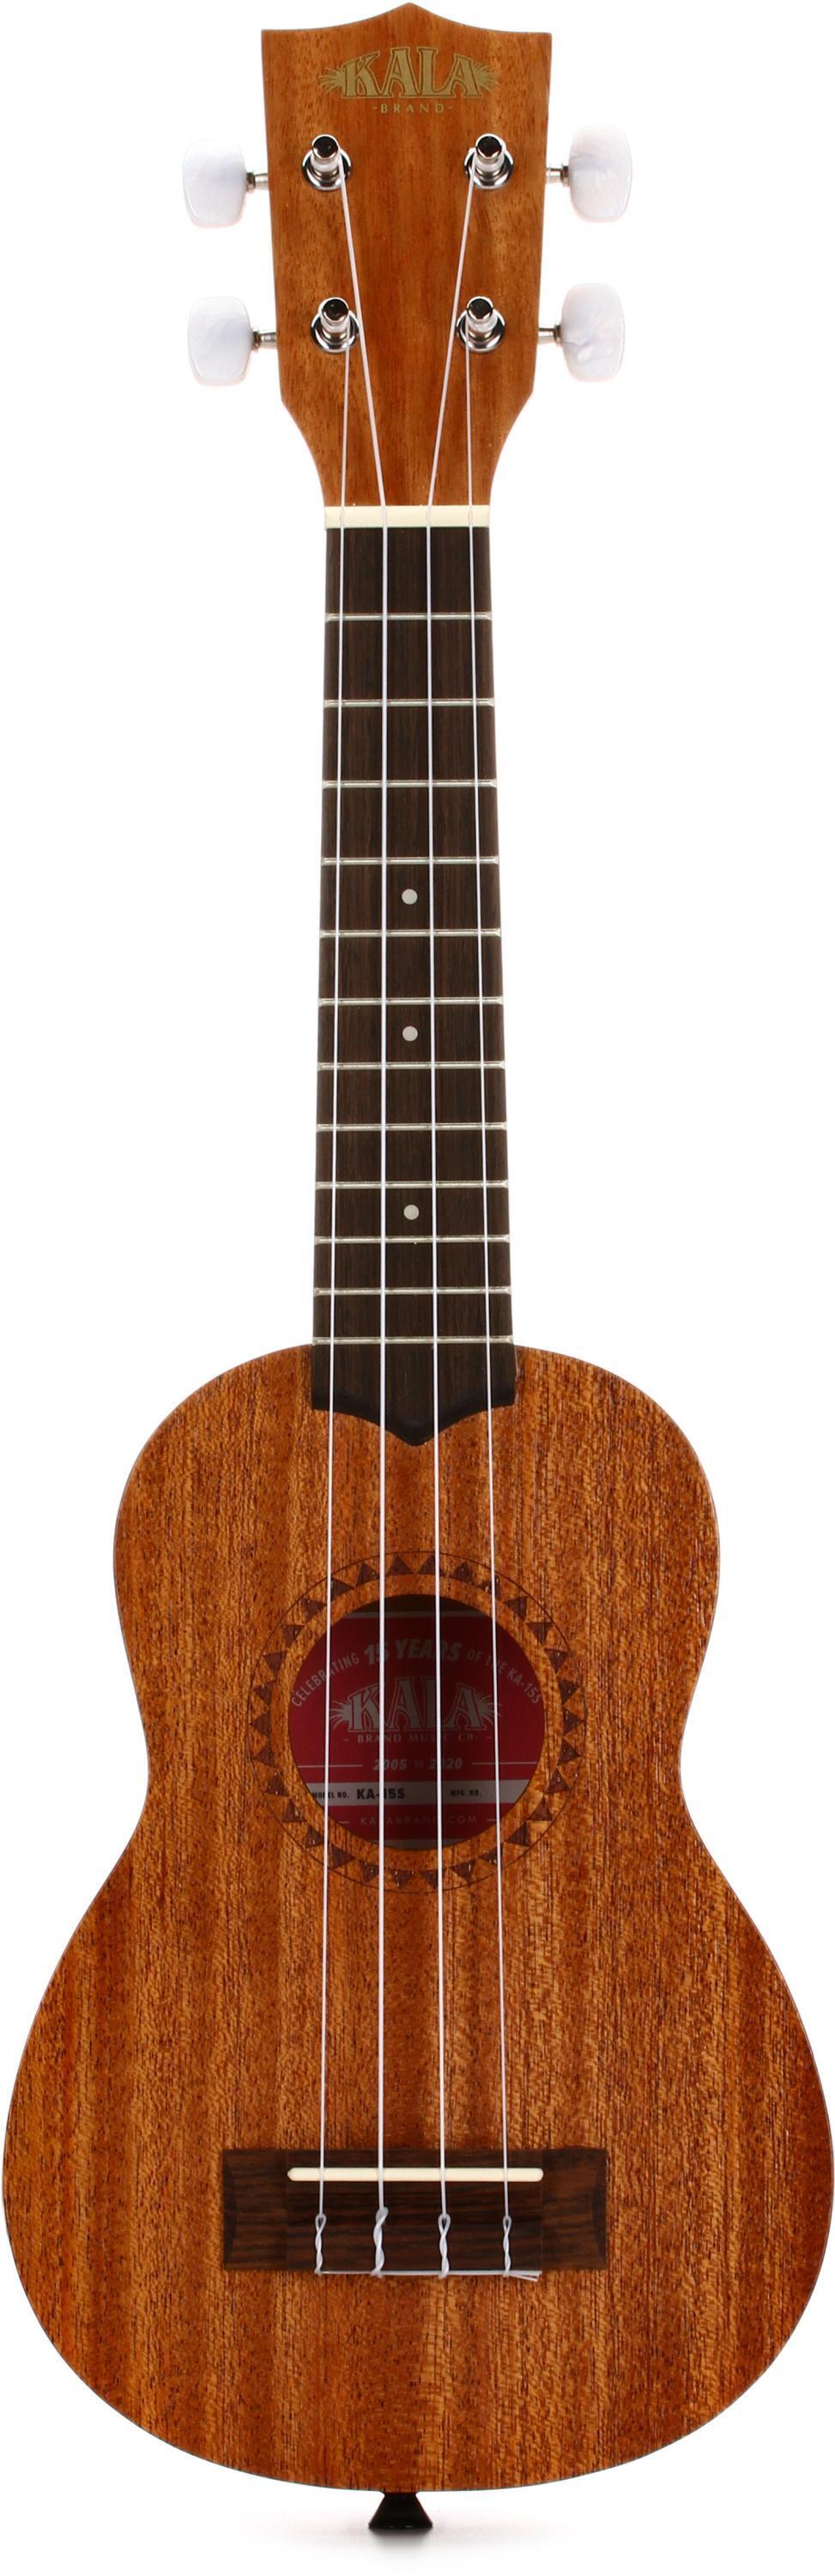 The Hawaiian Ukulele Company 4 string Soprano Late 90's - Wood